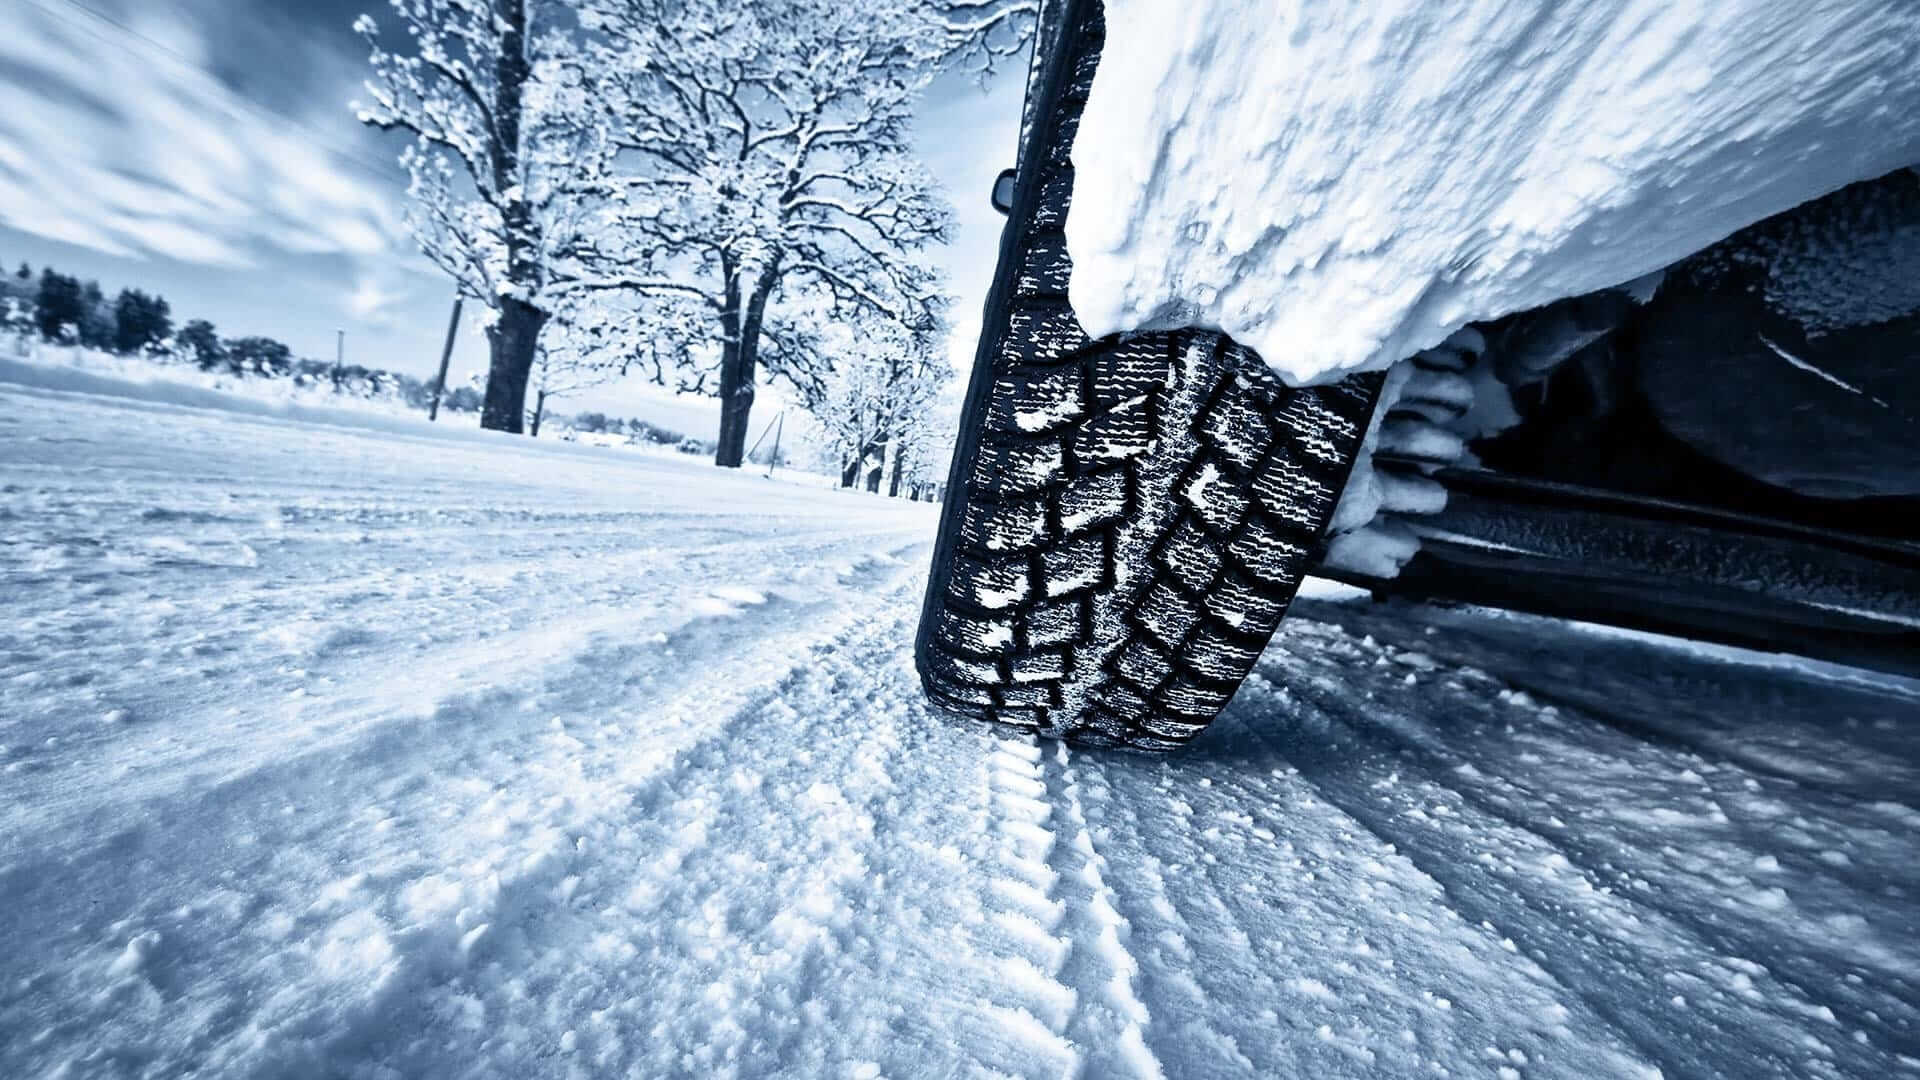 Met de leaseauto op wintersport: waar moet u op letten?